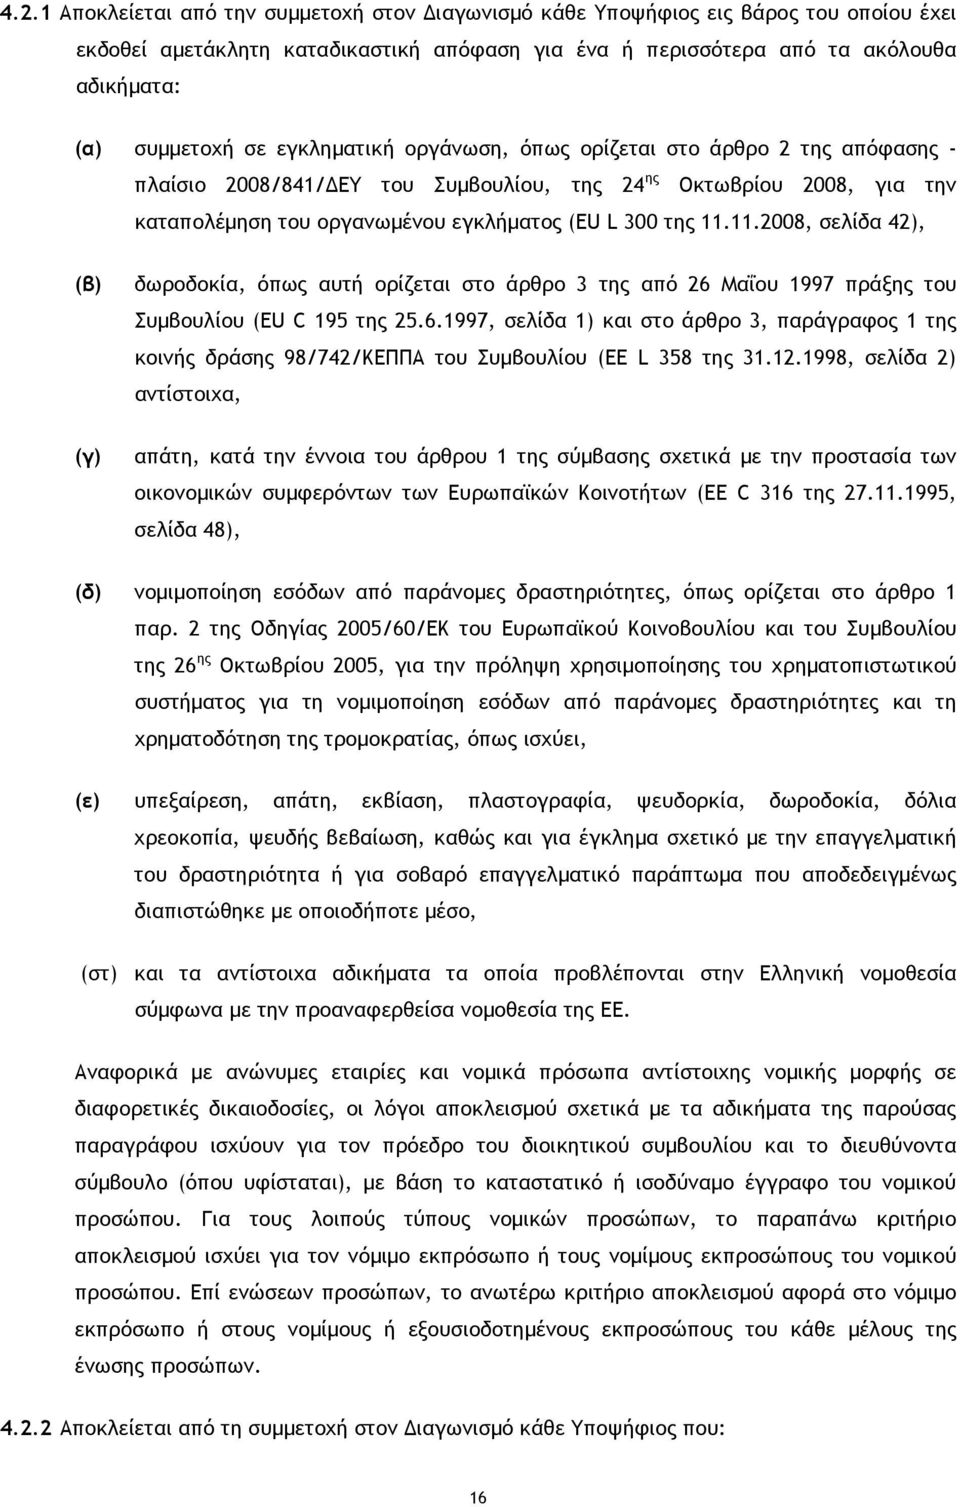 11.2008, σελίδα 42), (β) δωροδοκία, όπως αυτή ορίζεται στο άρθρο 3 της από 26 Μαΐου 1997 πράξης του Συµβουλίου (EU C 195 της 25.6.1997, σελίδα 1) και στο άρθρο 3, παράγραφος 1 της κοινής δράσης 98/742/ΚΕΠΠΑ του Συµβουλίου (ΕΕ L 358 της 31.